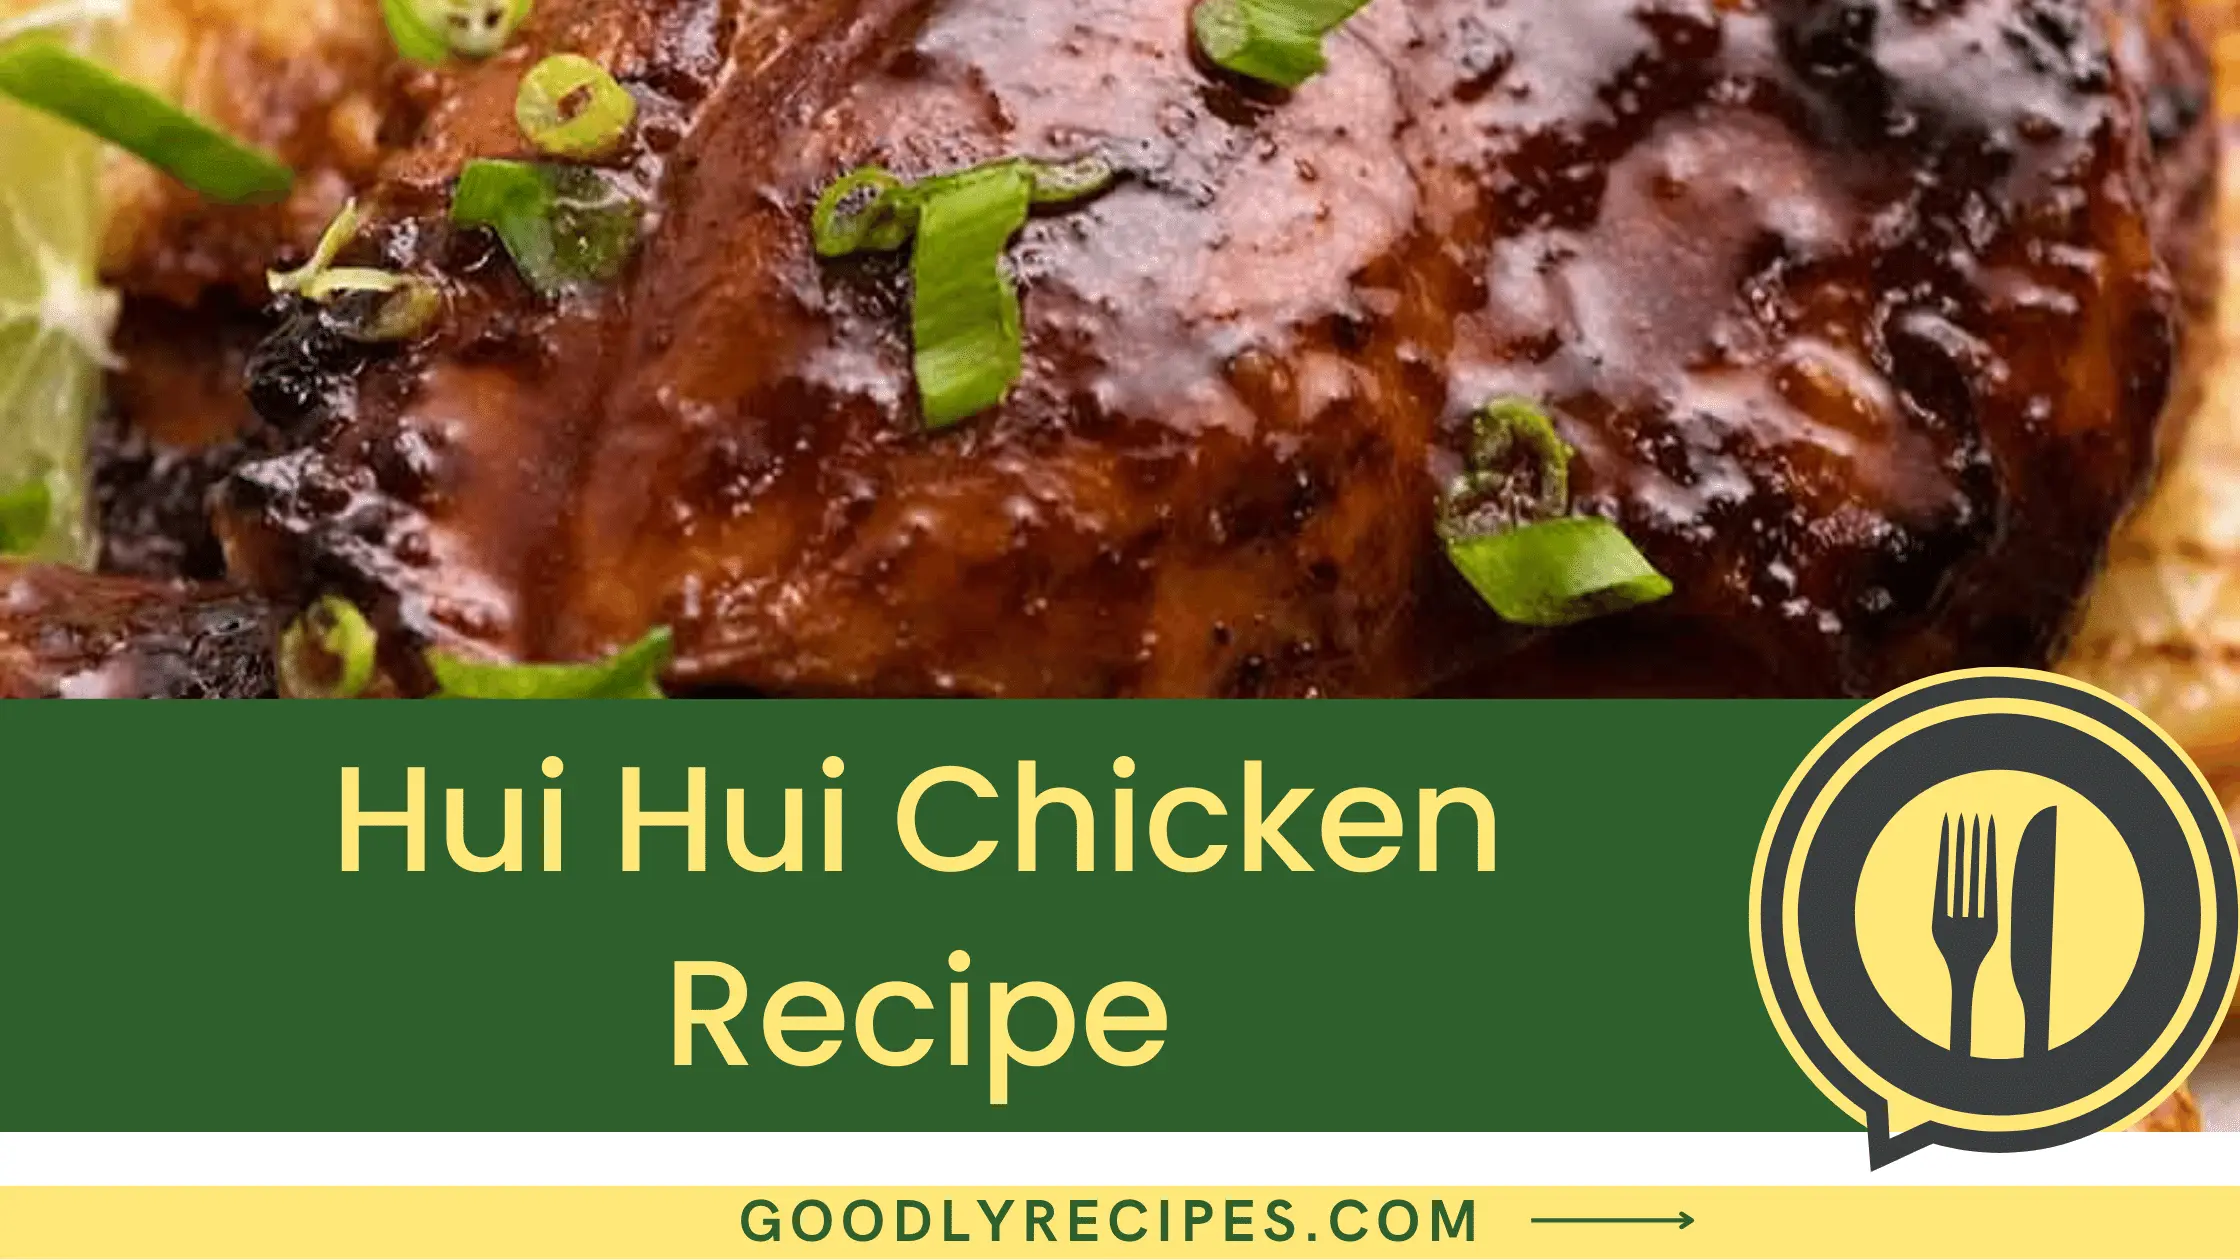 Hui Hui Chicken Recipe